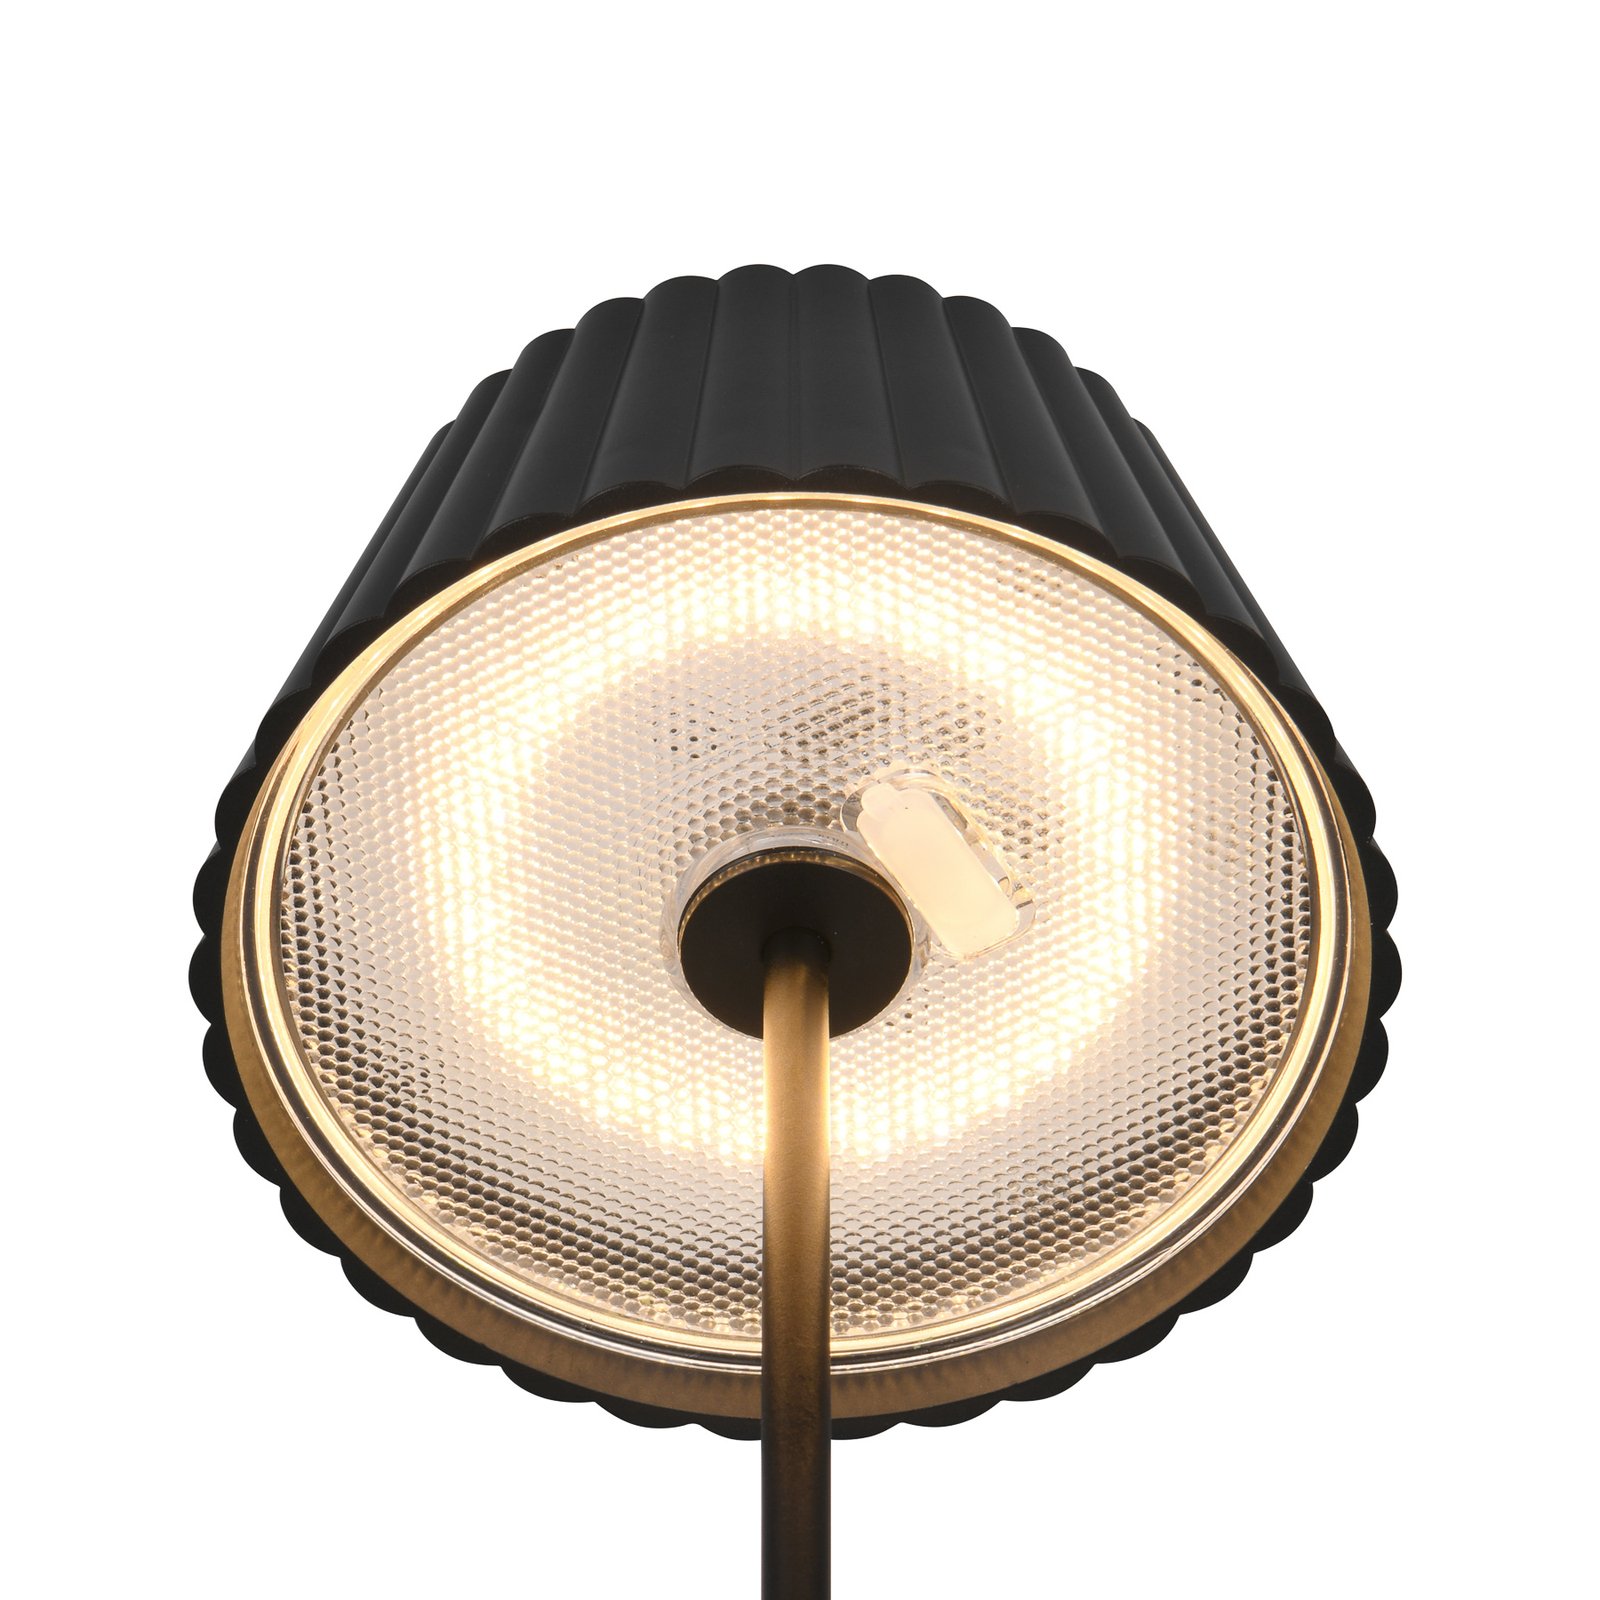 LED-Akku-Stehlampe Suarez, schwarz, Höhe 123 cm, Metall